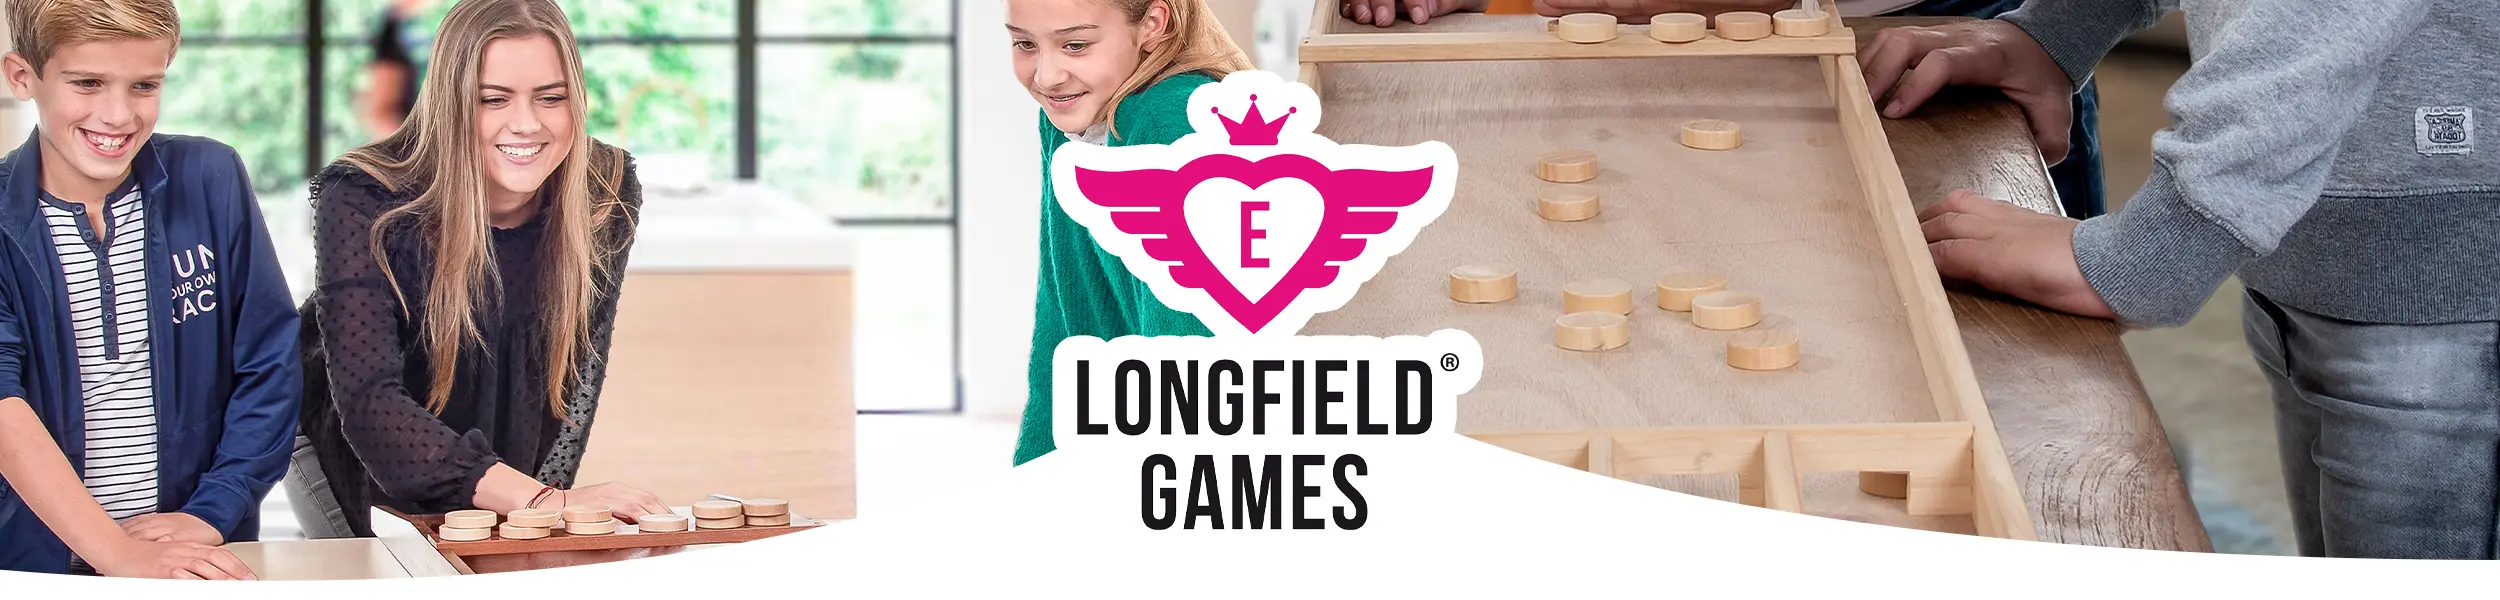 Longfield Games sjoelen shuffleboard shuffle tisch spiel